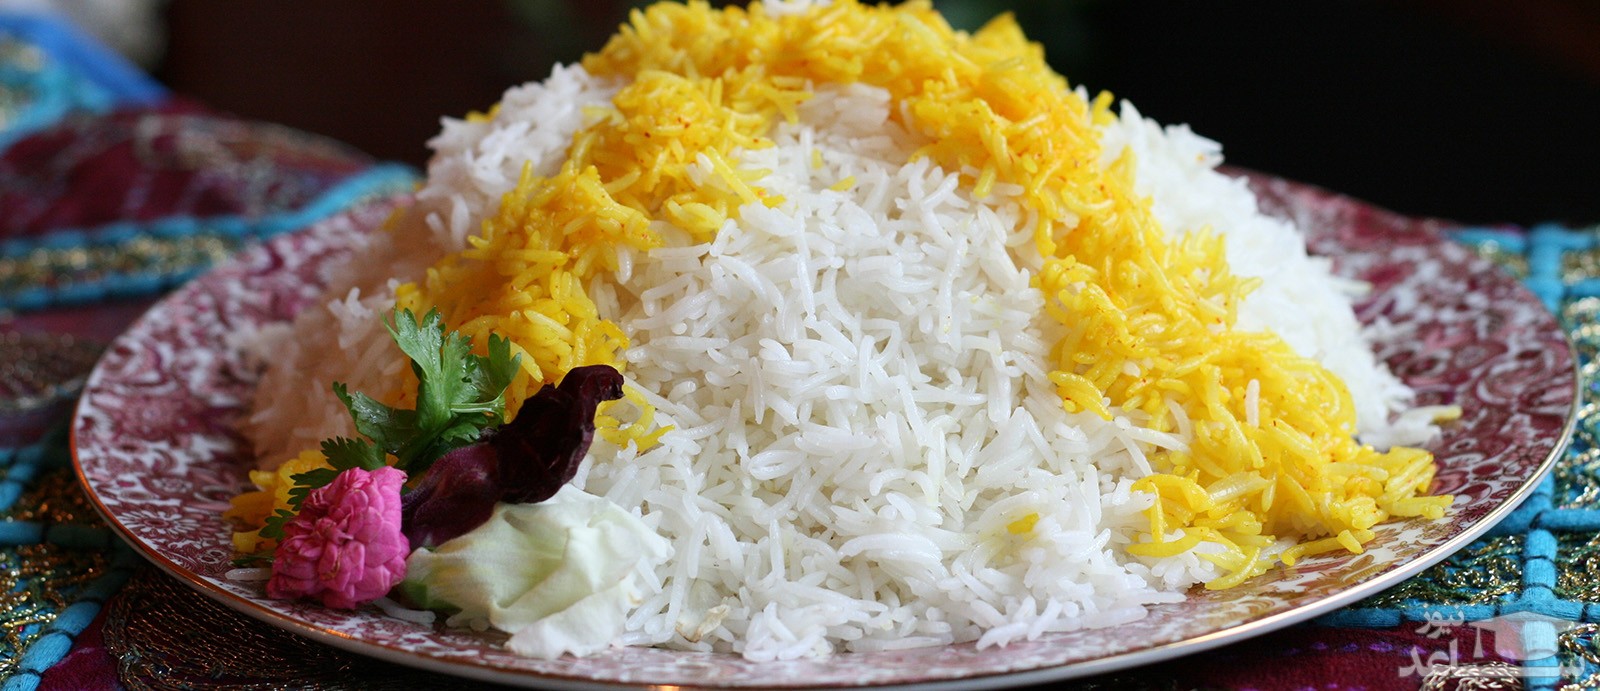 رفع بوی سوختگی از برنج با چند روش ساده